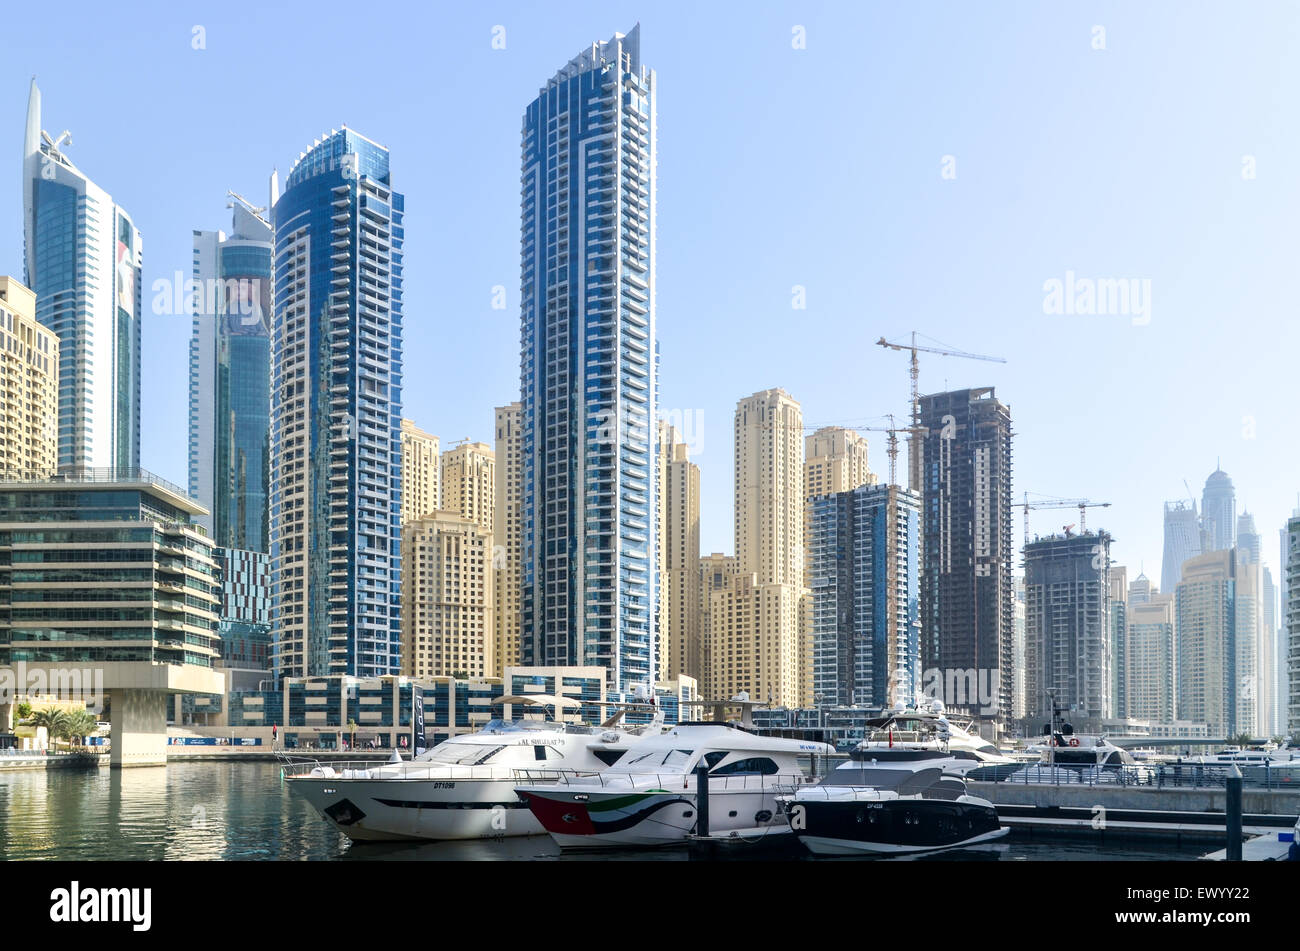 Yates enfrente de la moderna y futurista de edificios altos, las torres y los hoteles del puerto deportivo de Dubai, Emiratos Árabes Unidos Foto de stock